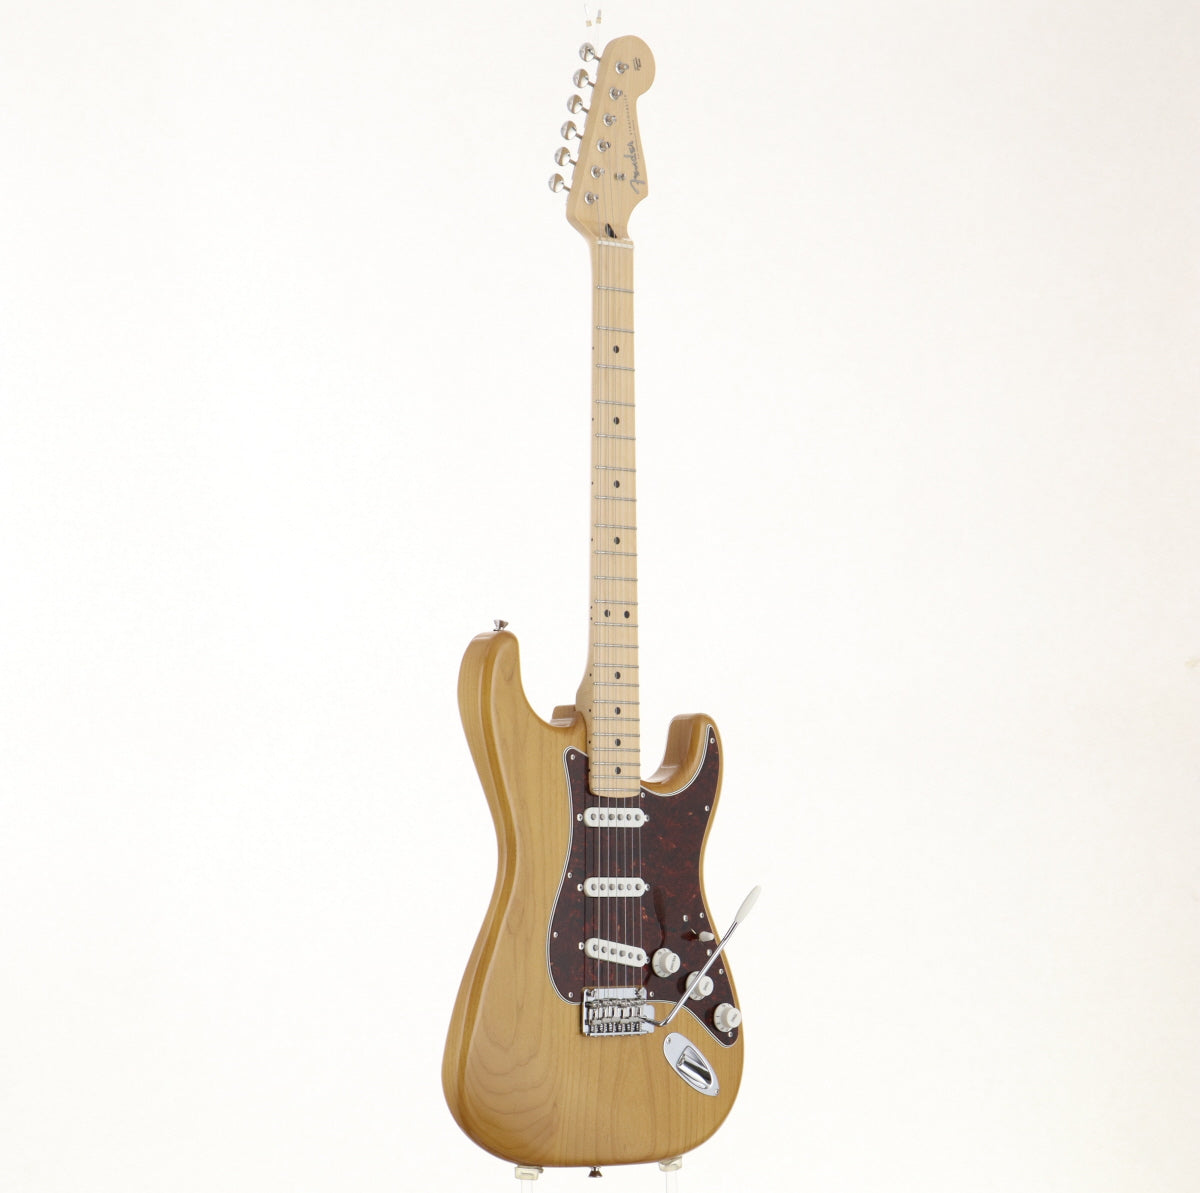 [SN JD22016007] USED Fender / Made in Japan Hybrid II Stratocaster Vintage Natural [06]